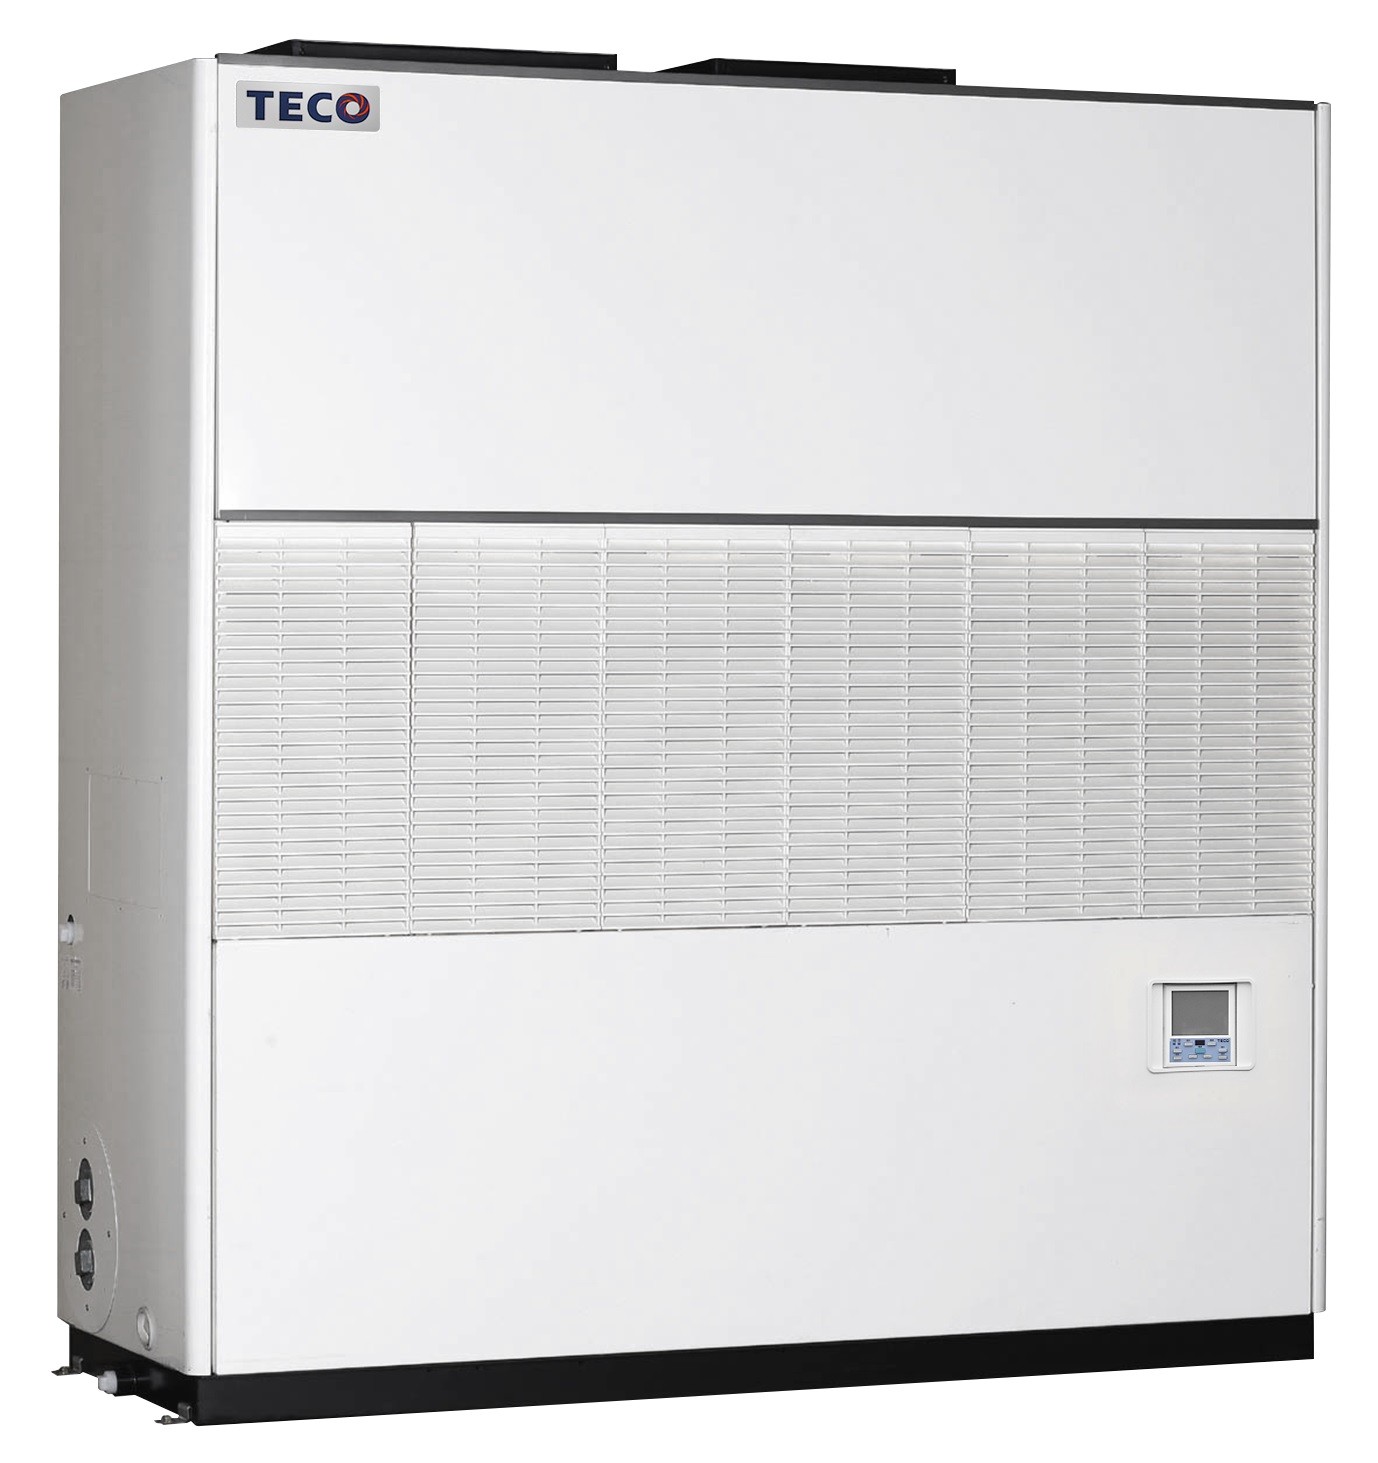 智慧雙動力節能聯網商用變頻水冷箱型空調機 / 東元電機股份有限公司